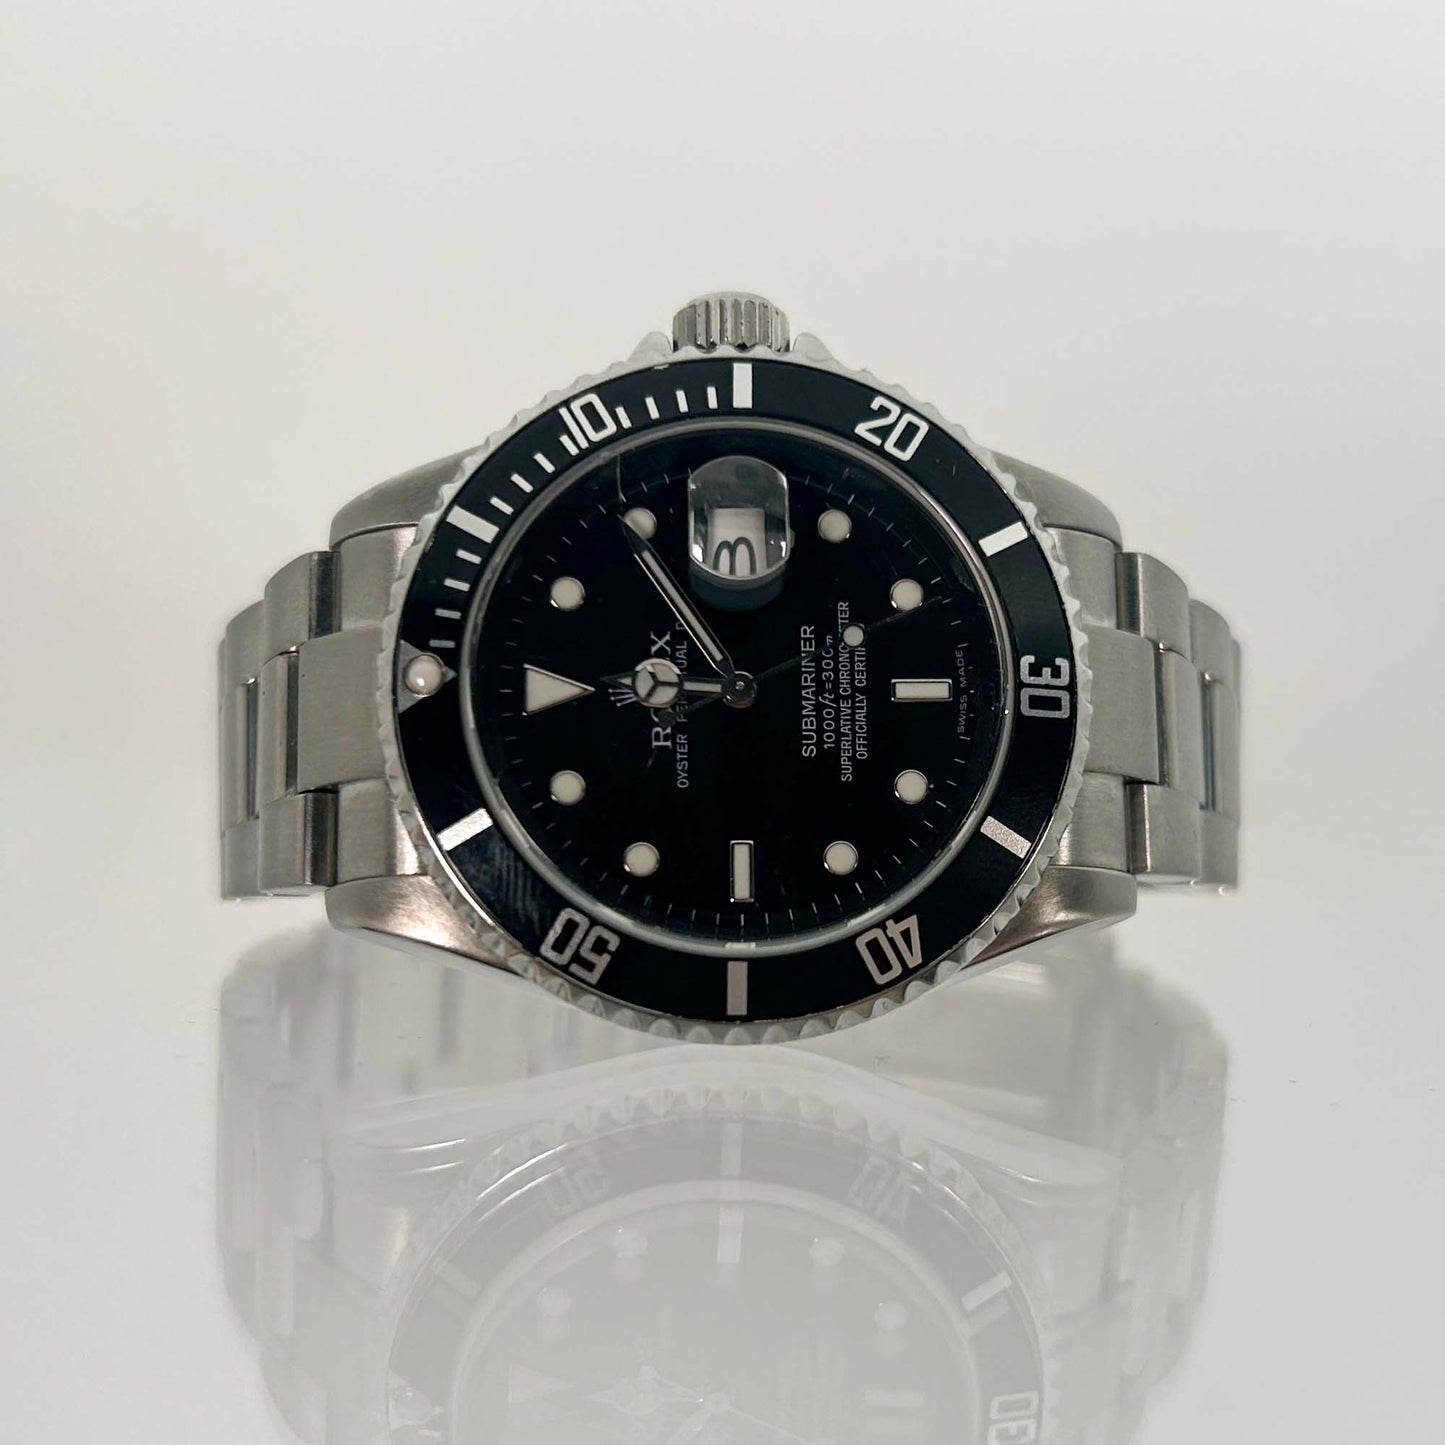 2006 Rolex Submariner Watch Front